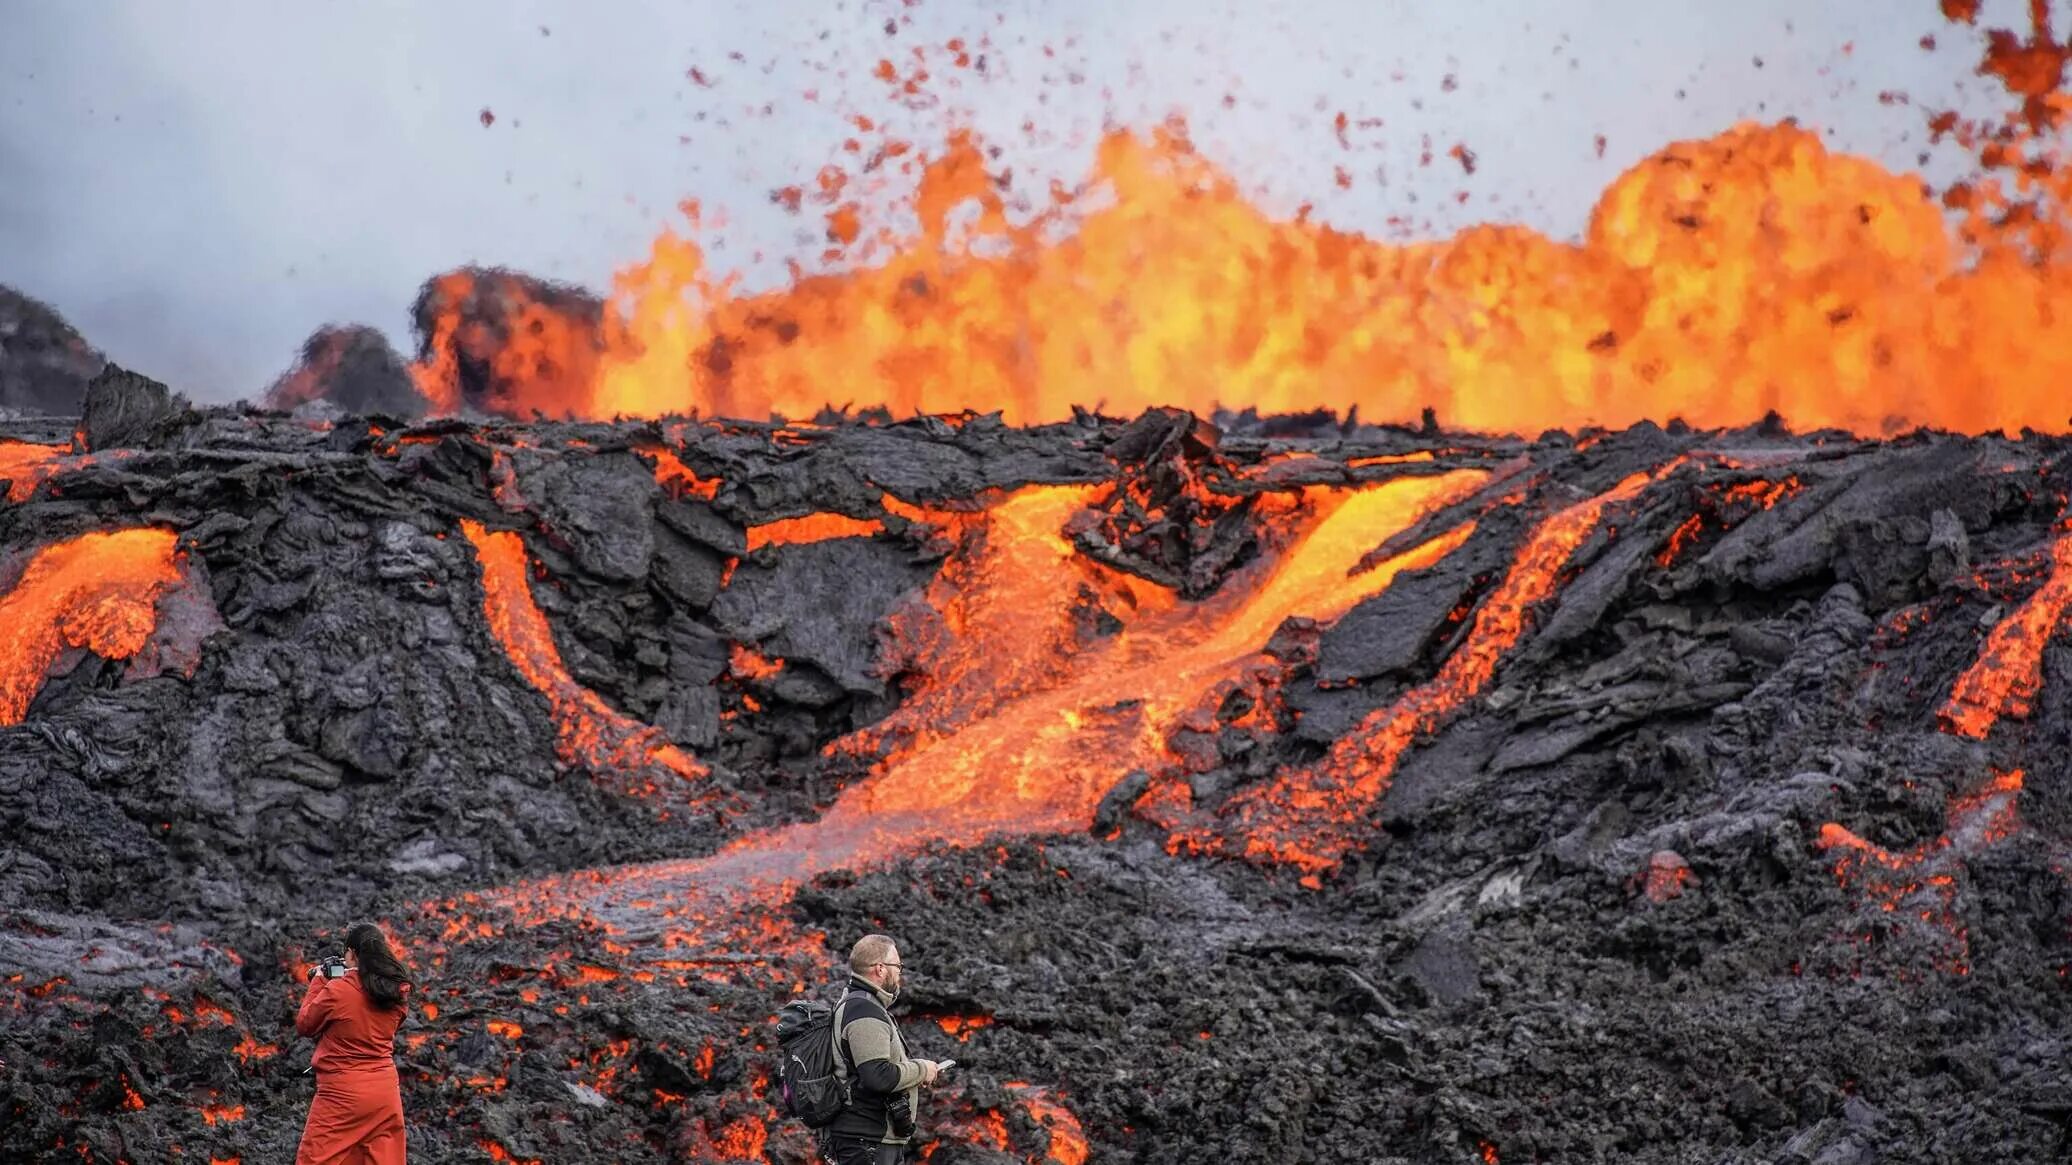 Вулкан в Исландии фаградальсфьядль. Извержение вулкана на Камчатке 2022. Извержение вулкана в Исландии Эйяфьятлайокудль. Рейкьявик Исландия вулканические лава. Сильные землетрясения извержения вулканов мощные гейзеры